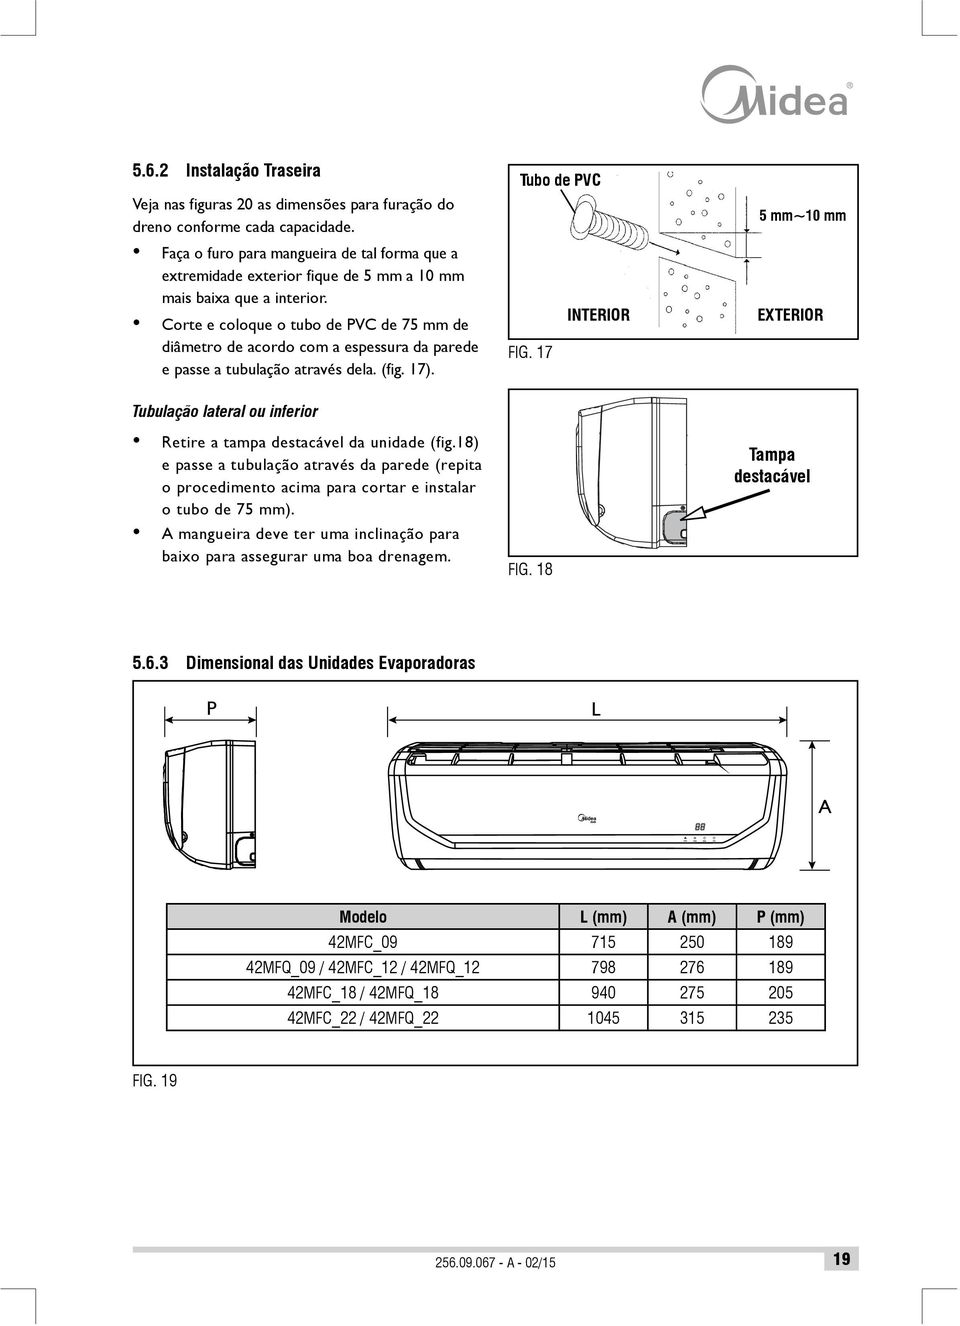 Corte e coloque o tubo de PVC de 75 mm de diâmetro de acordo com a espessura da parede e passe a tubulação através dela. (fig. 17).